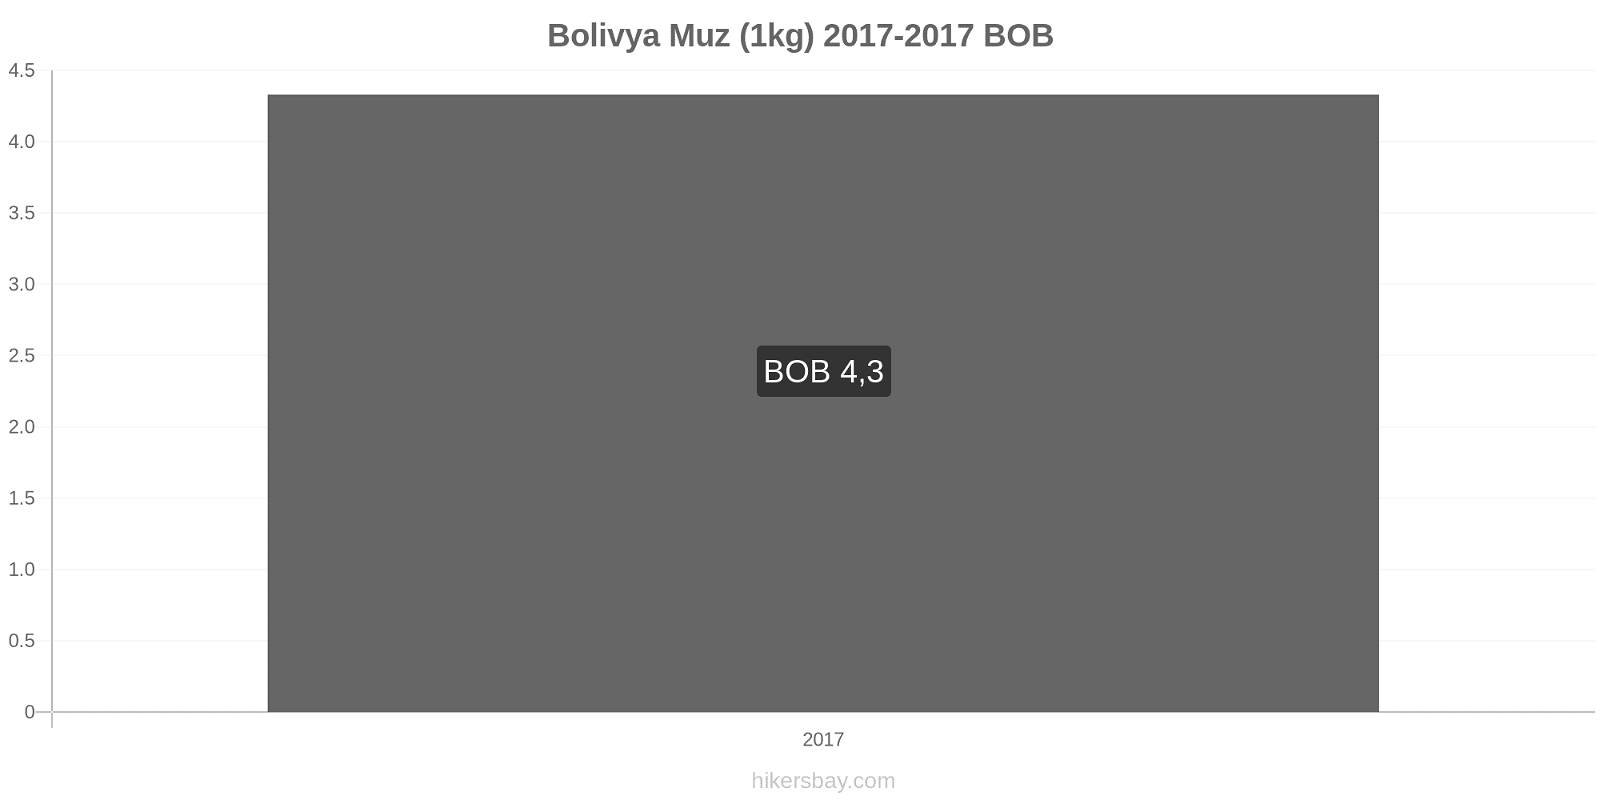 Bolivya fiyat değişiklikleri Muzlar (1kg) hikersbay.com